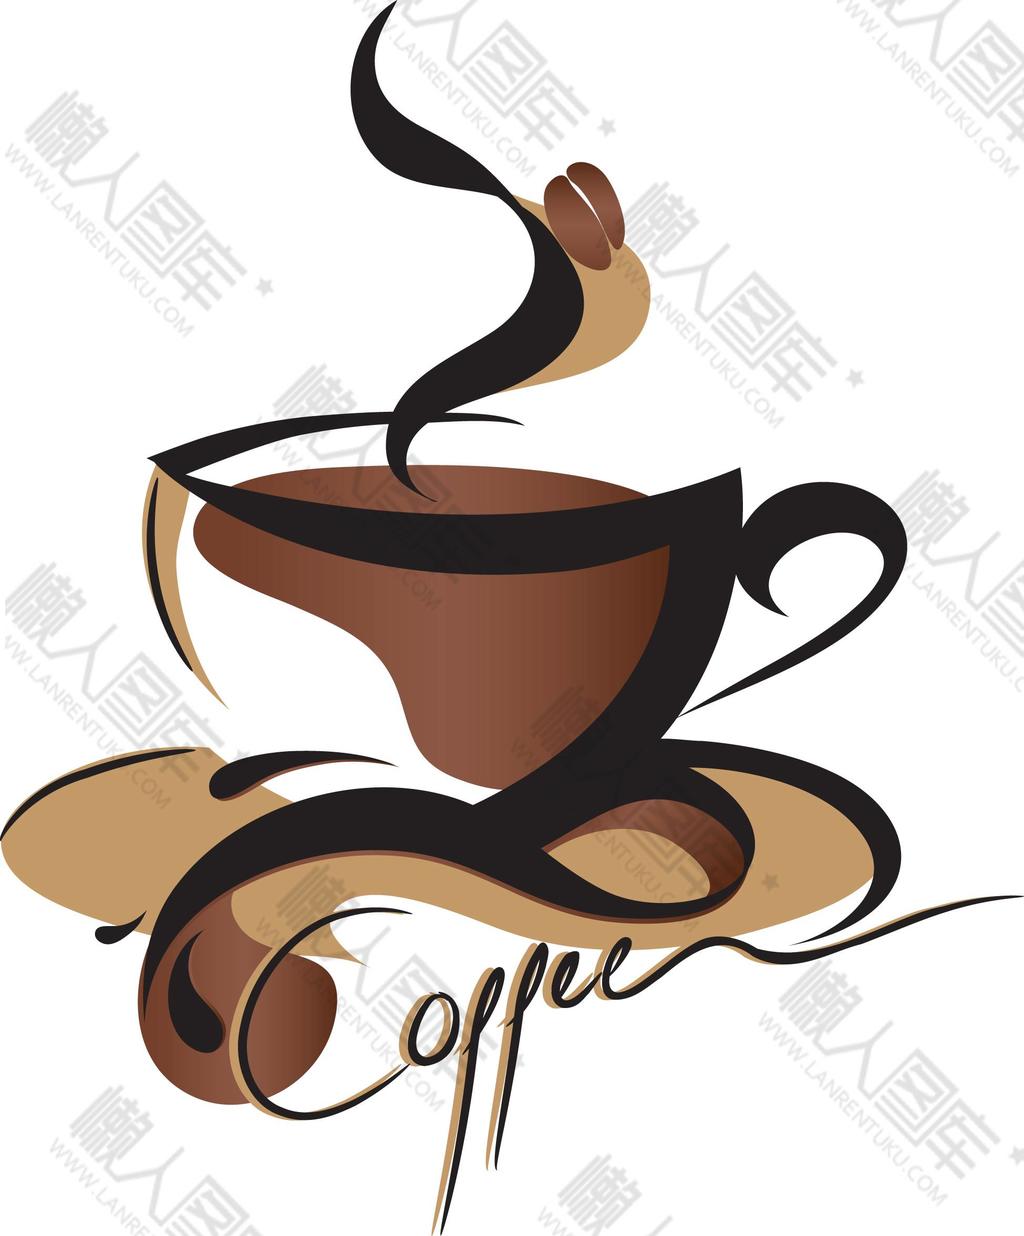 网红咖啡logo